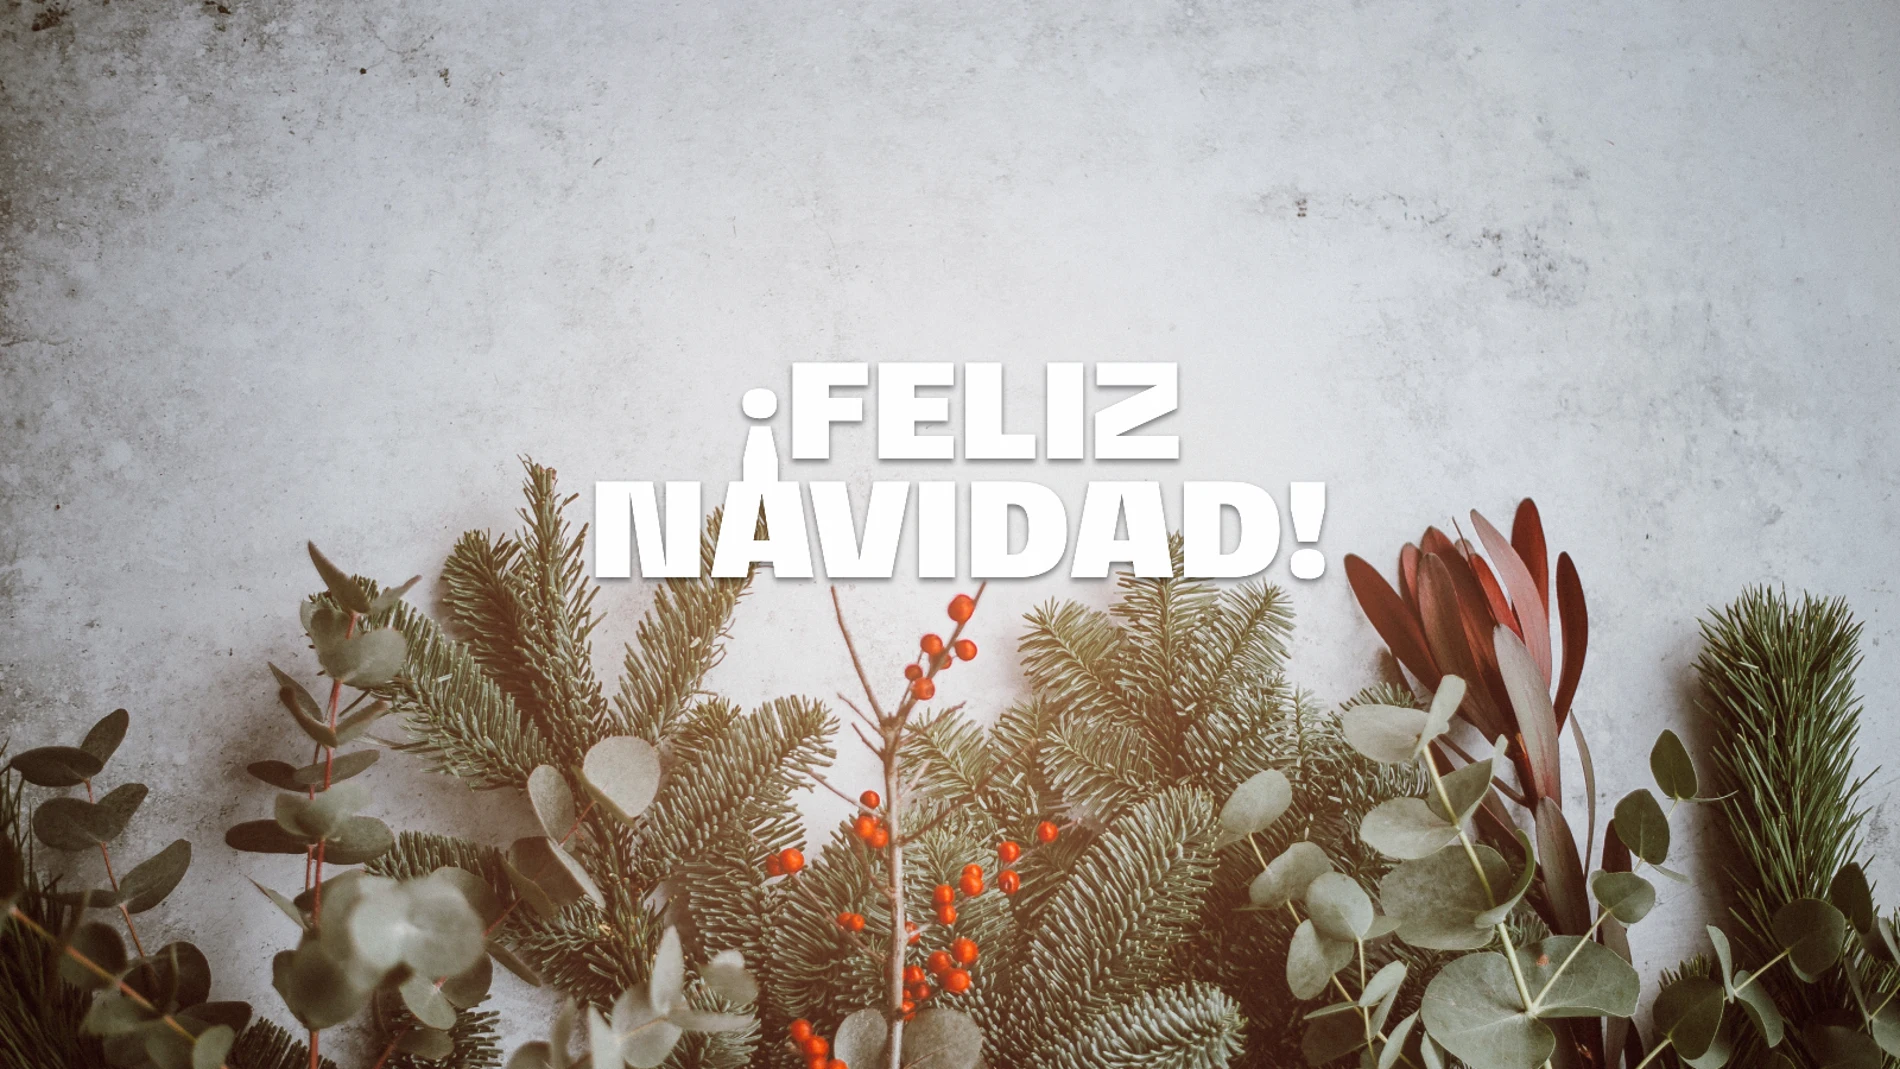 Cómo se dice ¡Feliz Navidad! en gallego, en euskera y en otros idiomas para tus felicitaciones